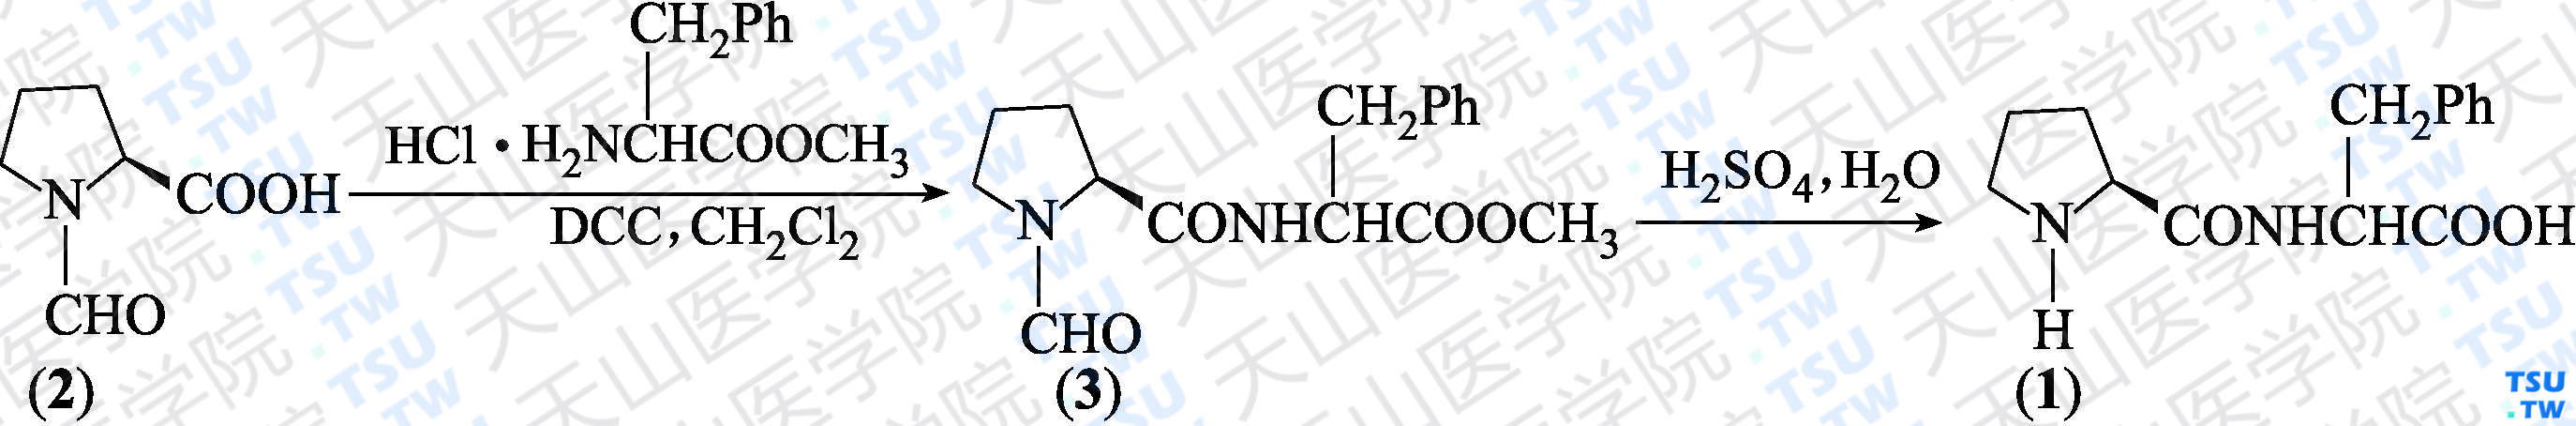 L-脯氨酰-L-苯丙氨酸（分子式：C<sub>14</sub>H<sub>18</sub>N<sub>2</sub>O<sub>3</sub>）的合成方法路线及其结构式